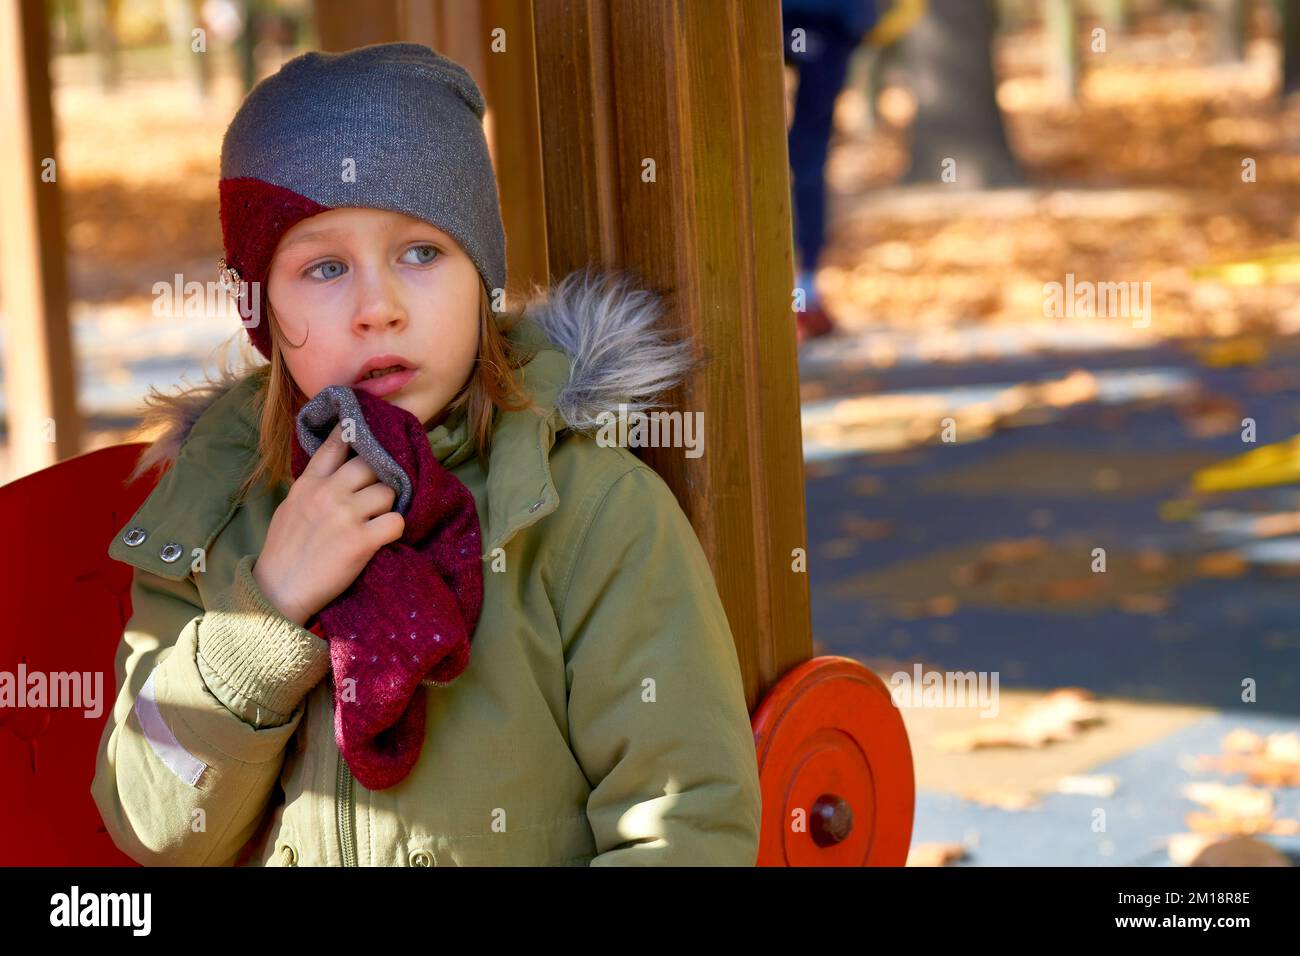 Beleidigtes, verängstigtes Kind in einer Jacke und einem Hut auf einem Herbstspielplatz Stockfoto